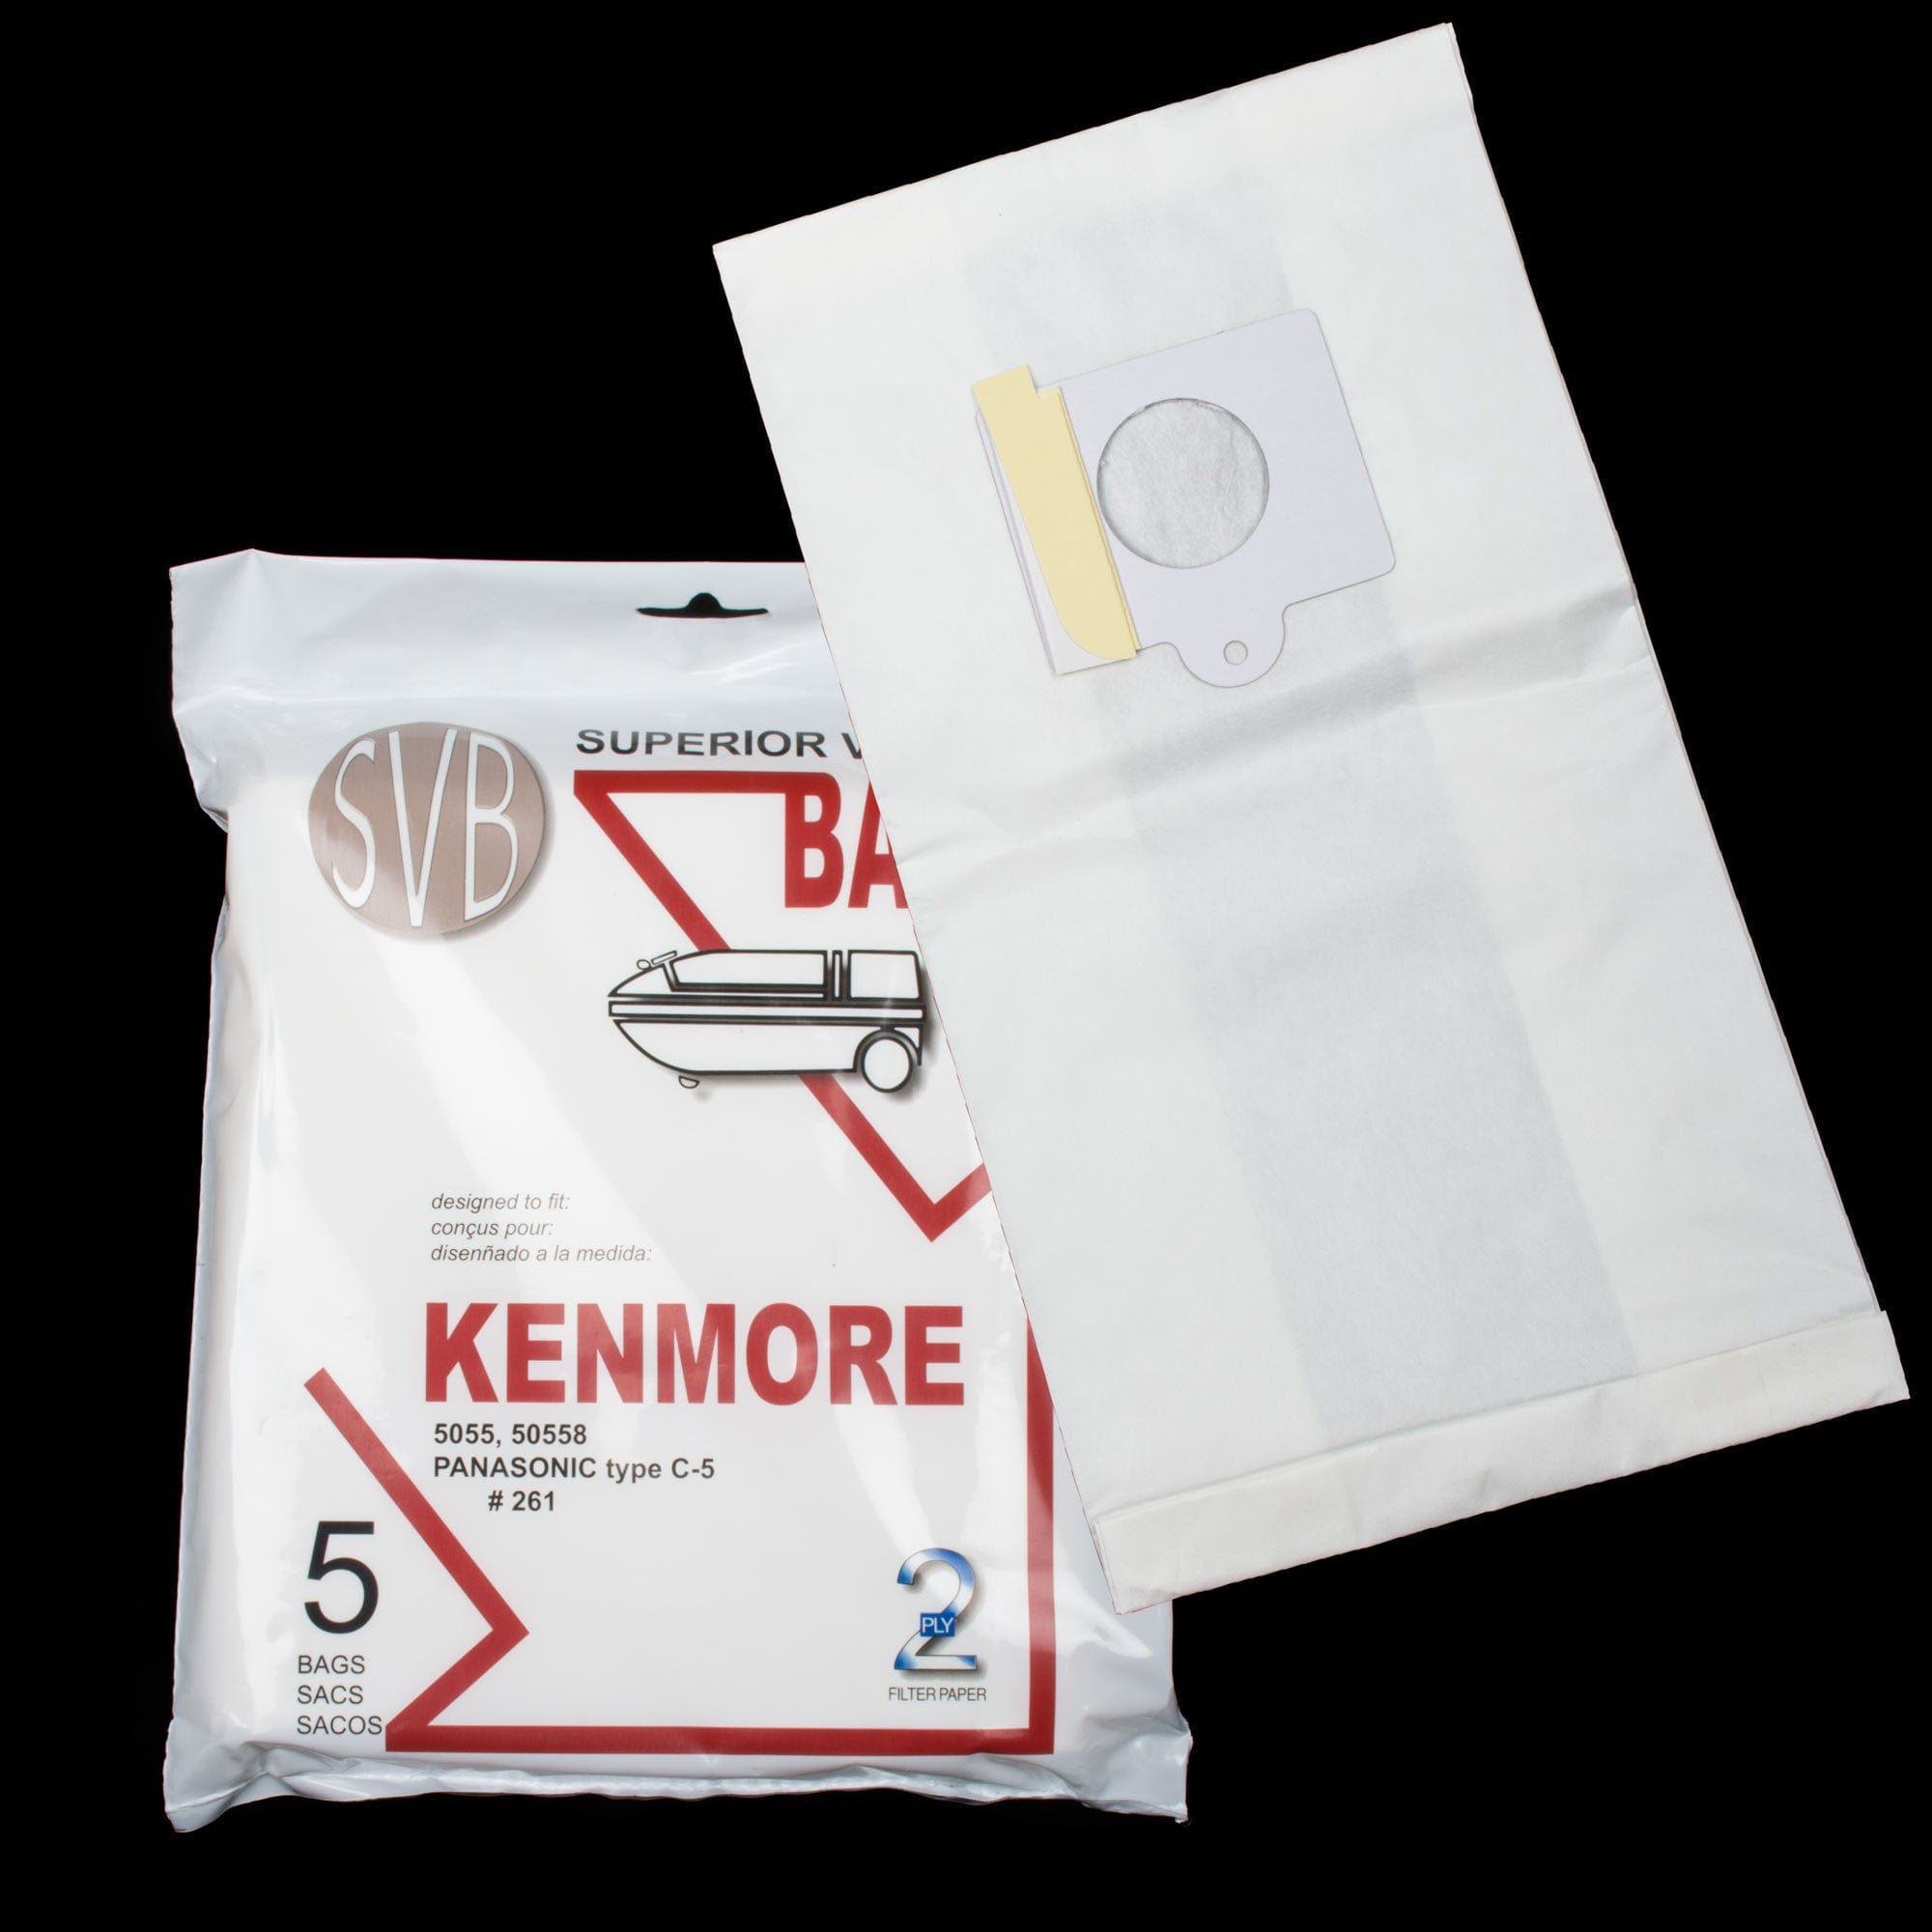 Kenmore & Panasonic Vacuum Bags | 5 Pack | BA261